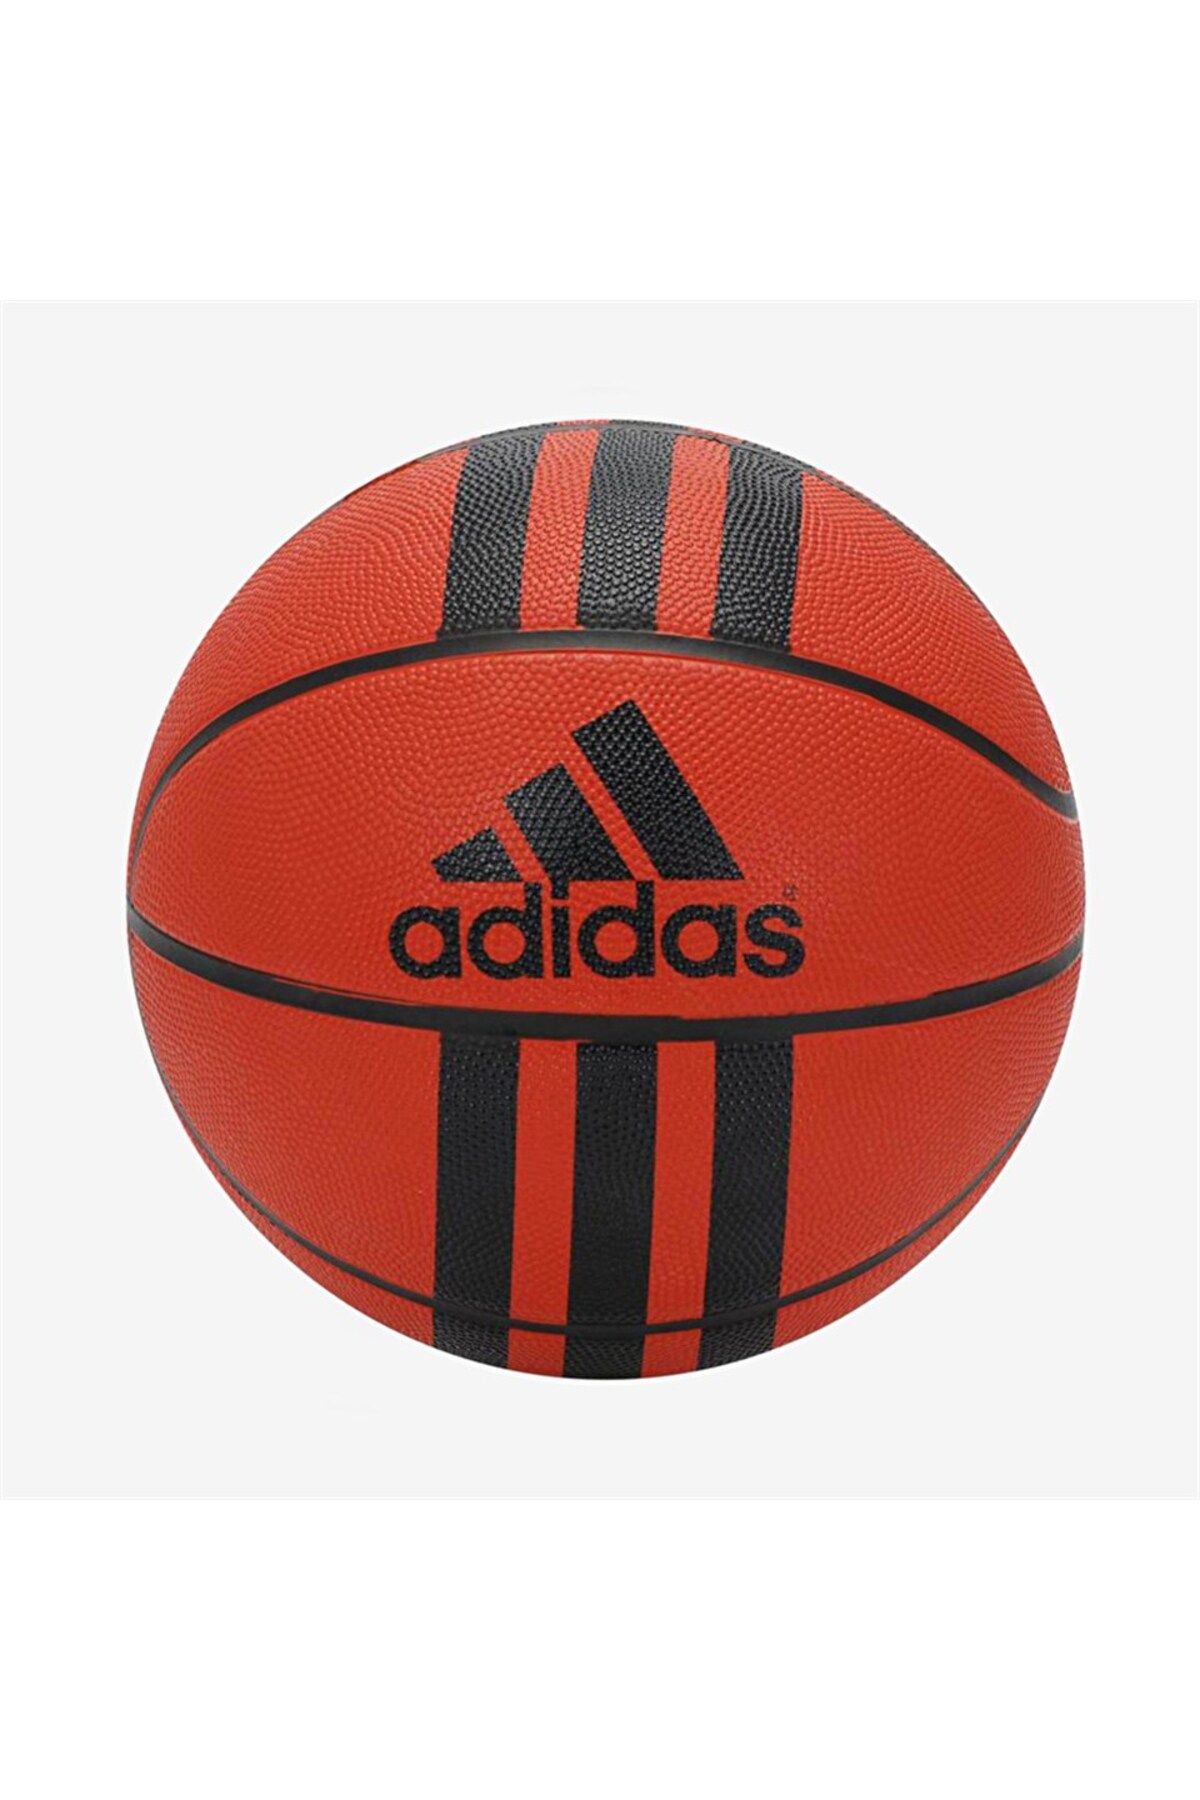 adidas 3s Rubber 218977 Siyah Beyaz Basket Topu Turuncu